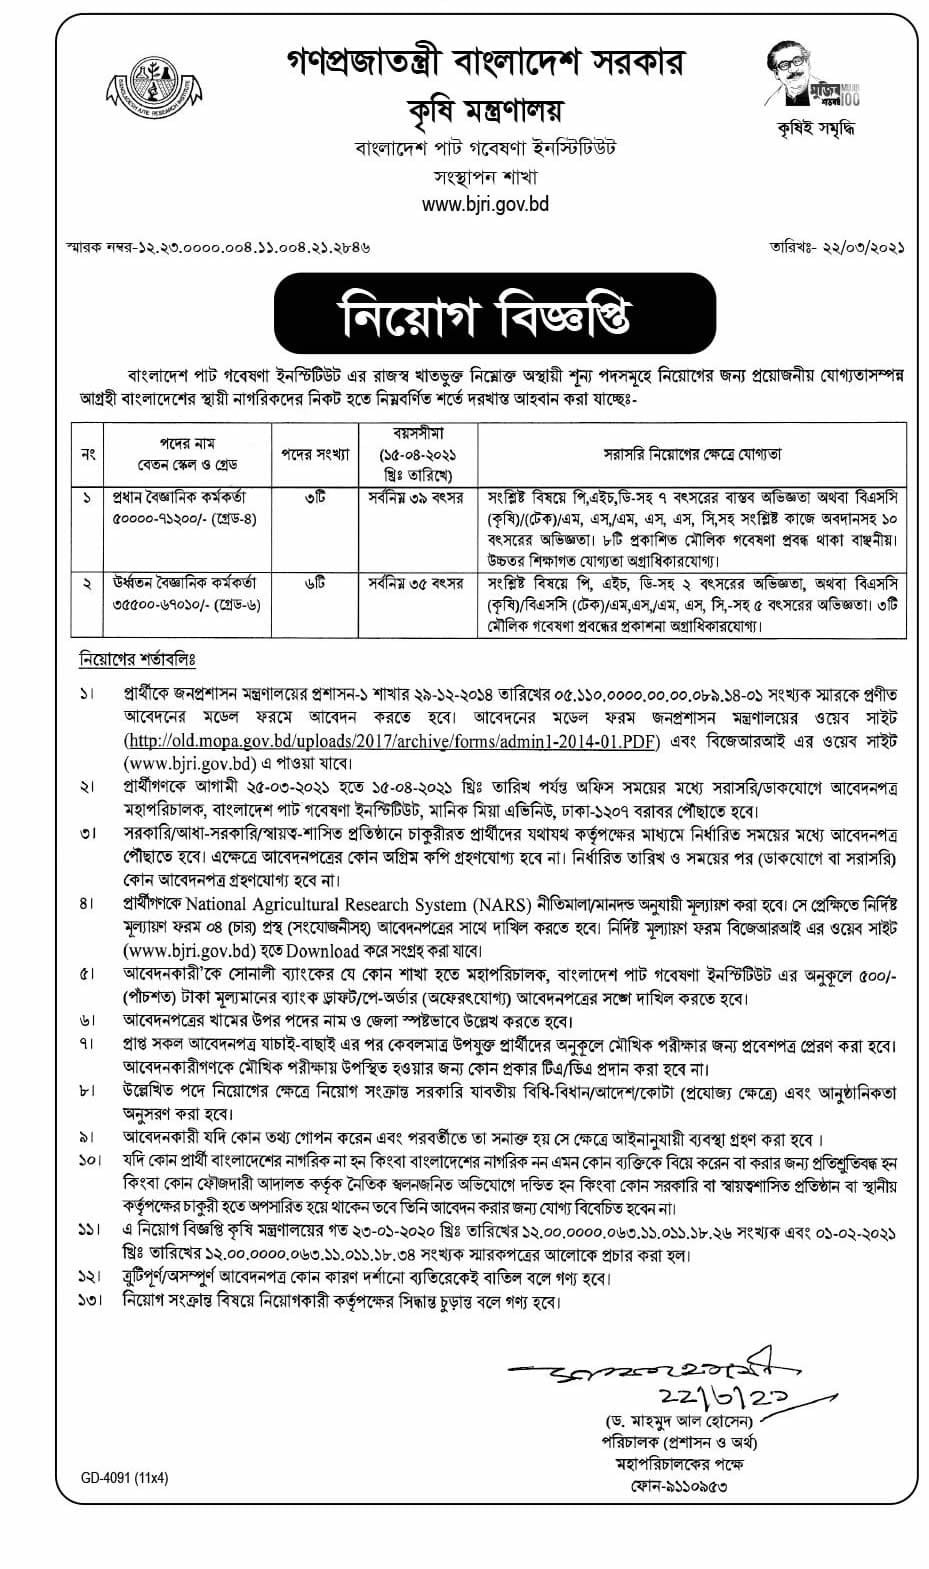 Bangladesh Jute Research Institute BJRI Job Circular 2021 Image & PDF Download